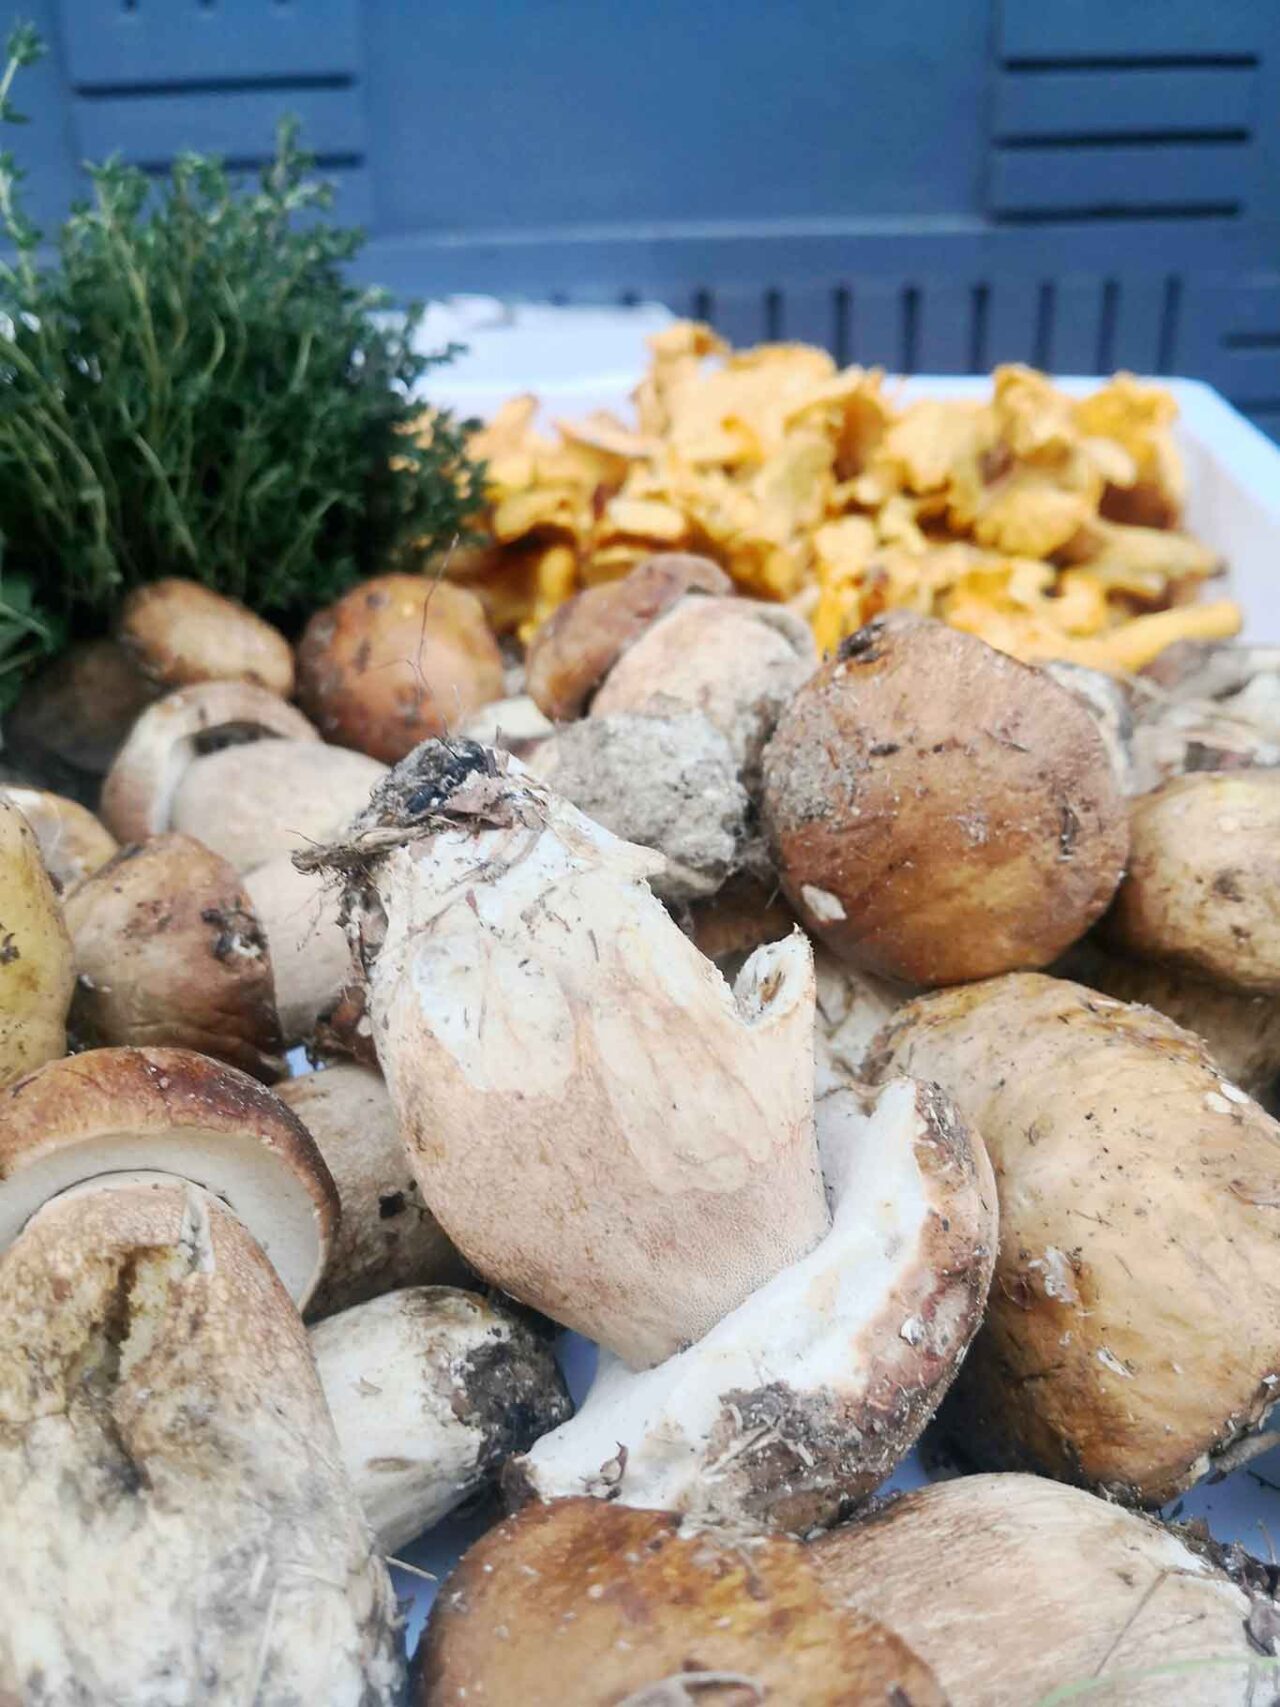 funghi porcini in Abruzzo: 